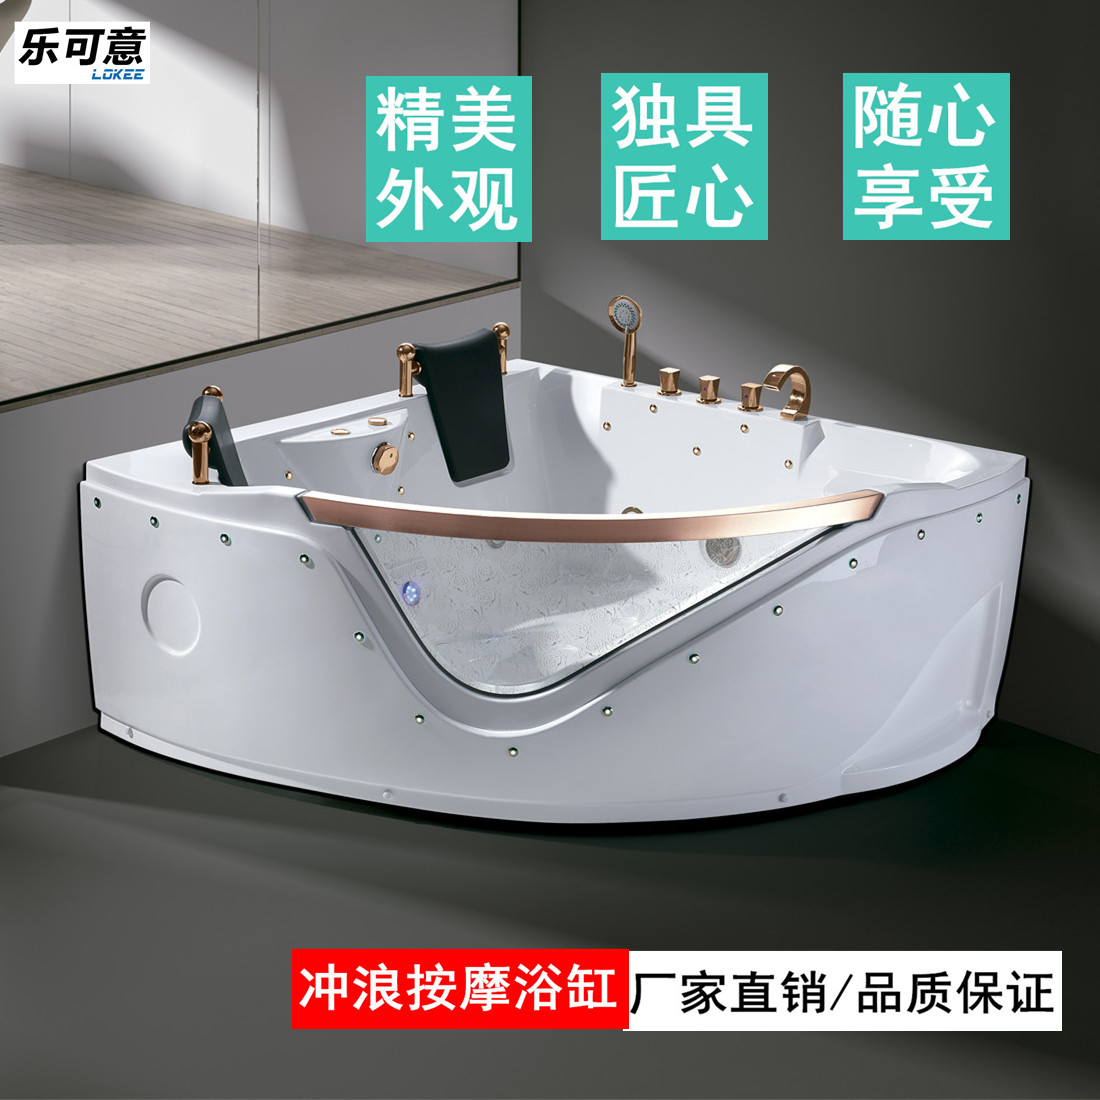 乐可意酒店家用亚克力浴缸1.5米扇形冲浪按摩泡泡浴恒温泡澡盆